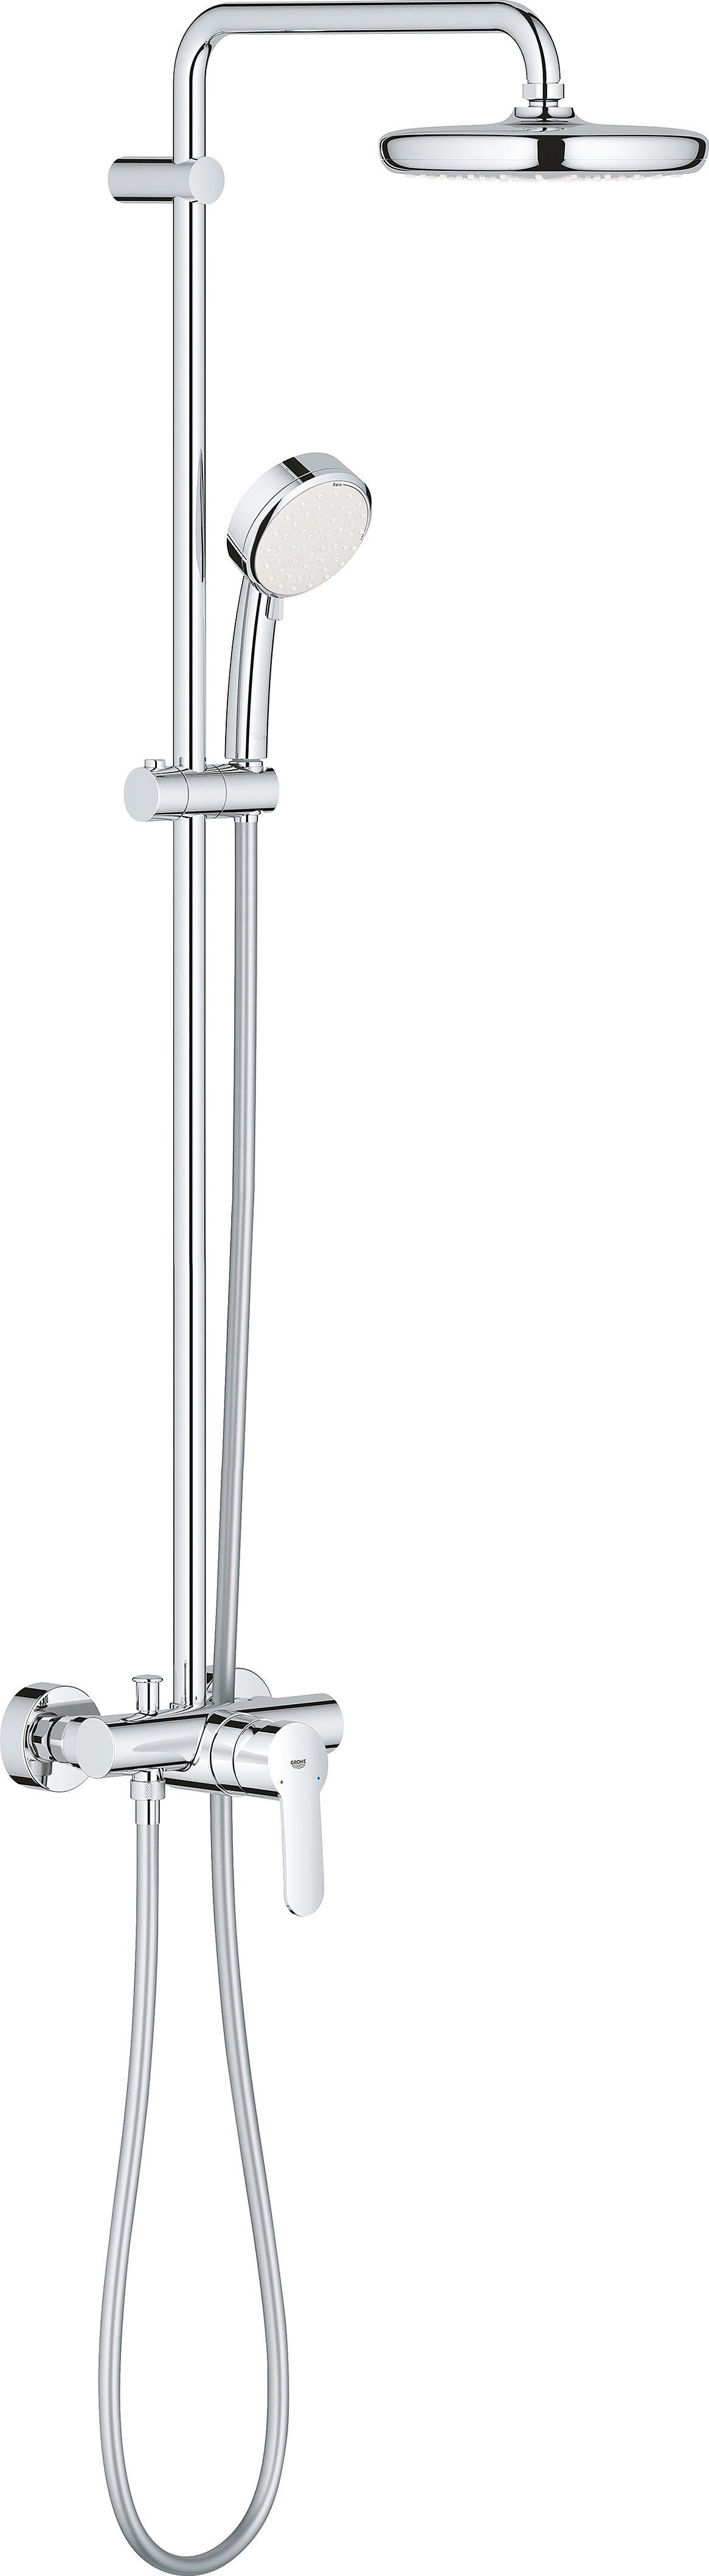 Grohe Duschsystem Tempesta Cosmopolitan, Höhe 102,8 cm, 1 Strahlart(en), Packung, mit langlebieger und scheinender Oberfläche